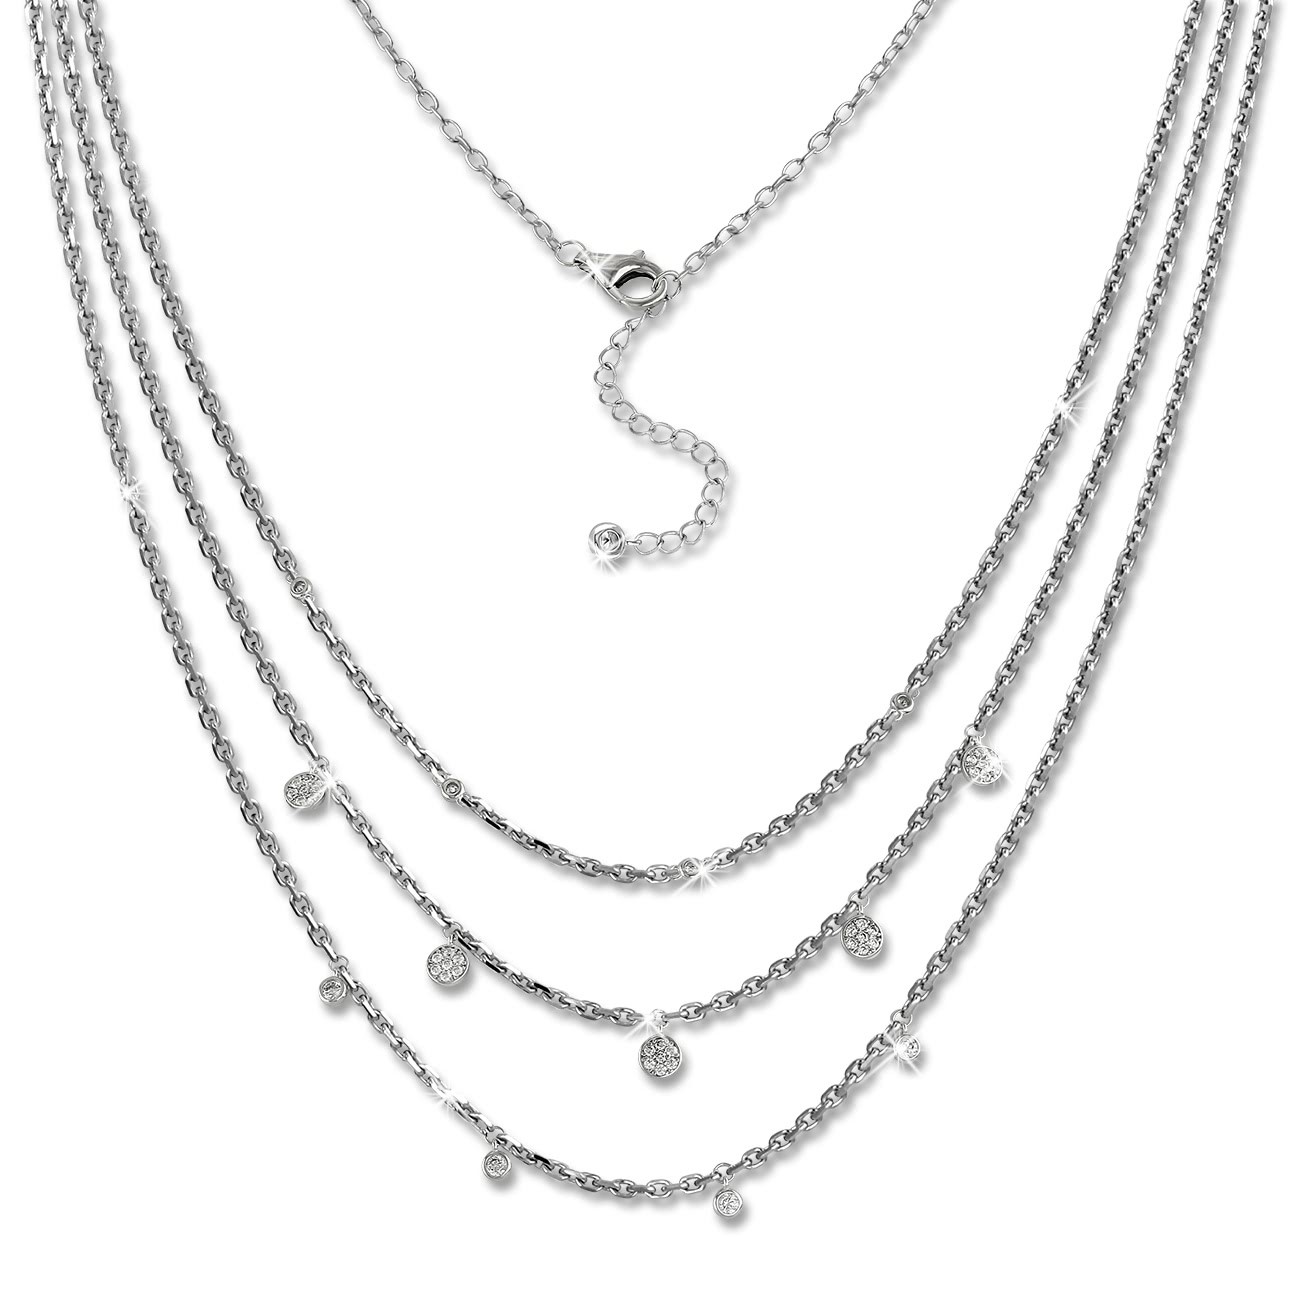 SilberDream 3er Layer Halskette Zirkonia weiß 925 Silber 44-47cm Kette GSK414W